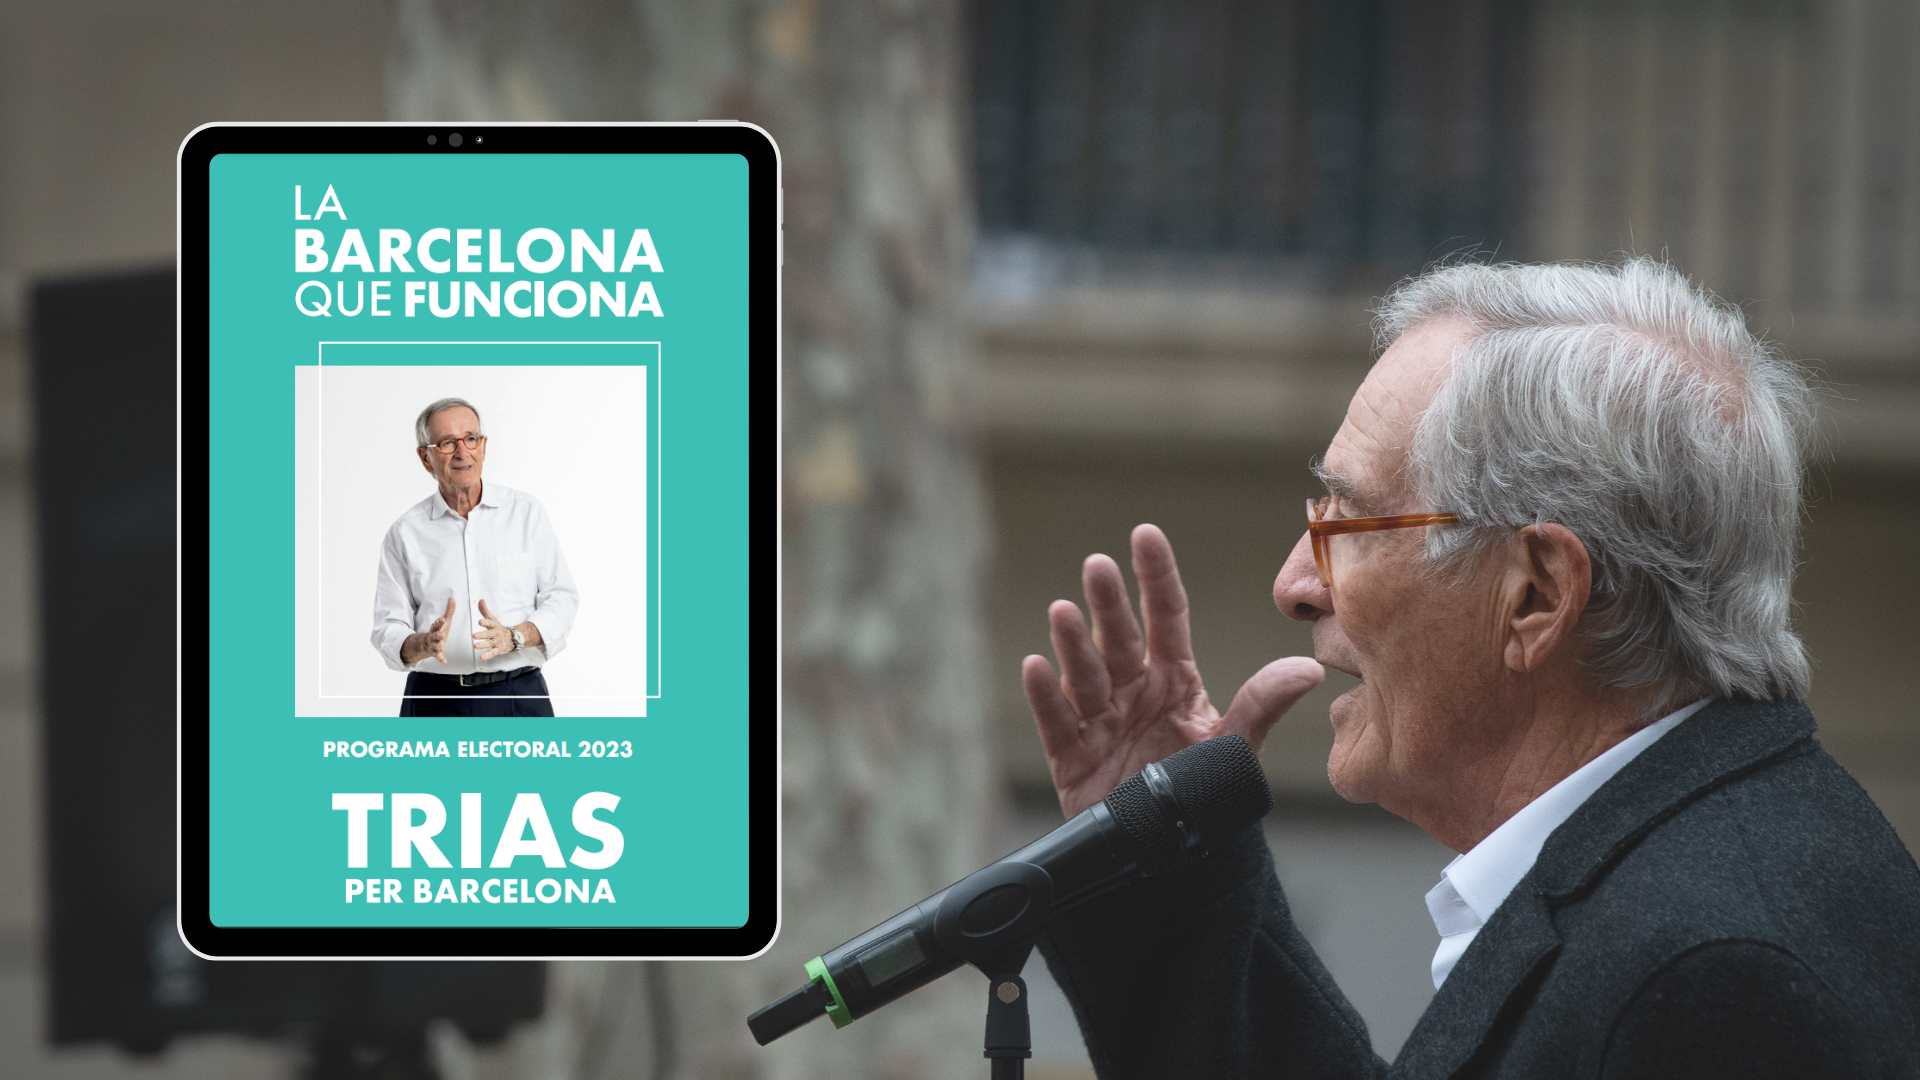 Programa electoral de Trias per Barcelona 2023: ¿qué propone Xavier Trias?